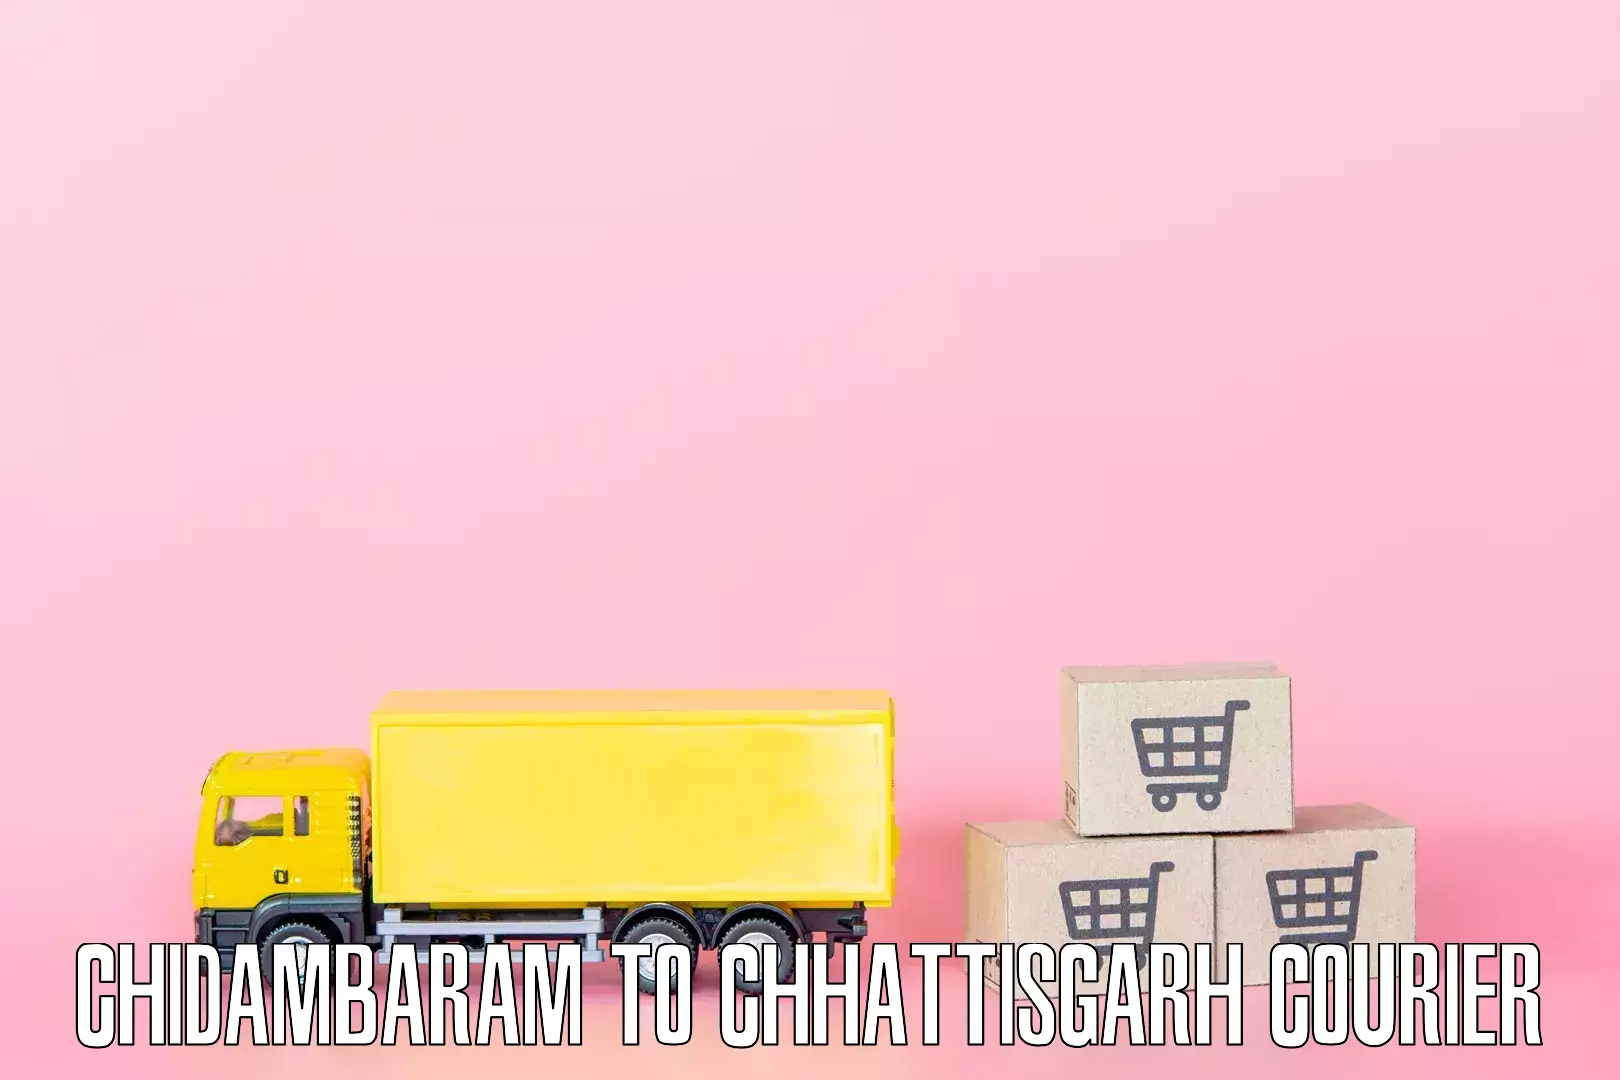 Professional movers in Chidambaram to Sarangarh